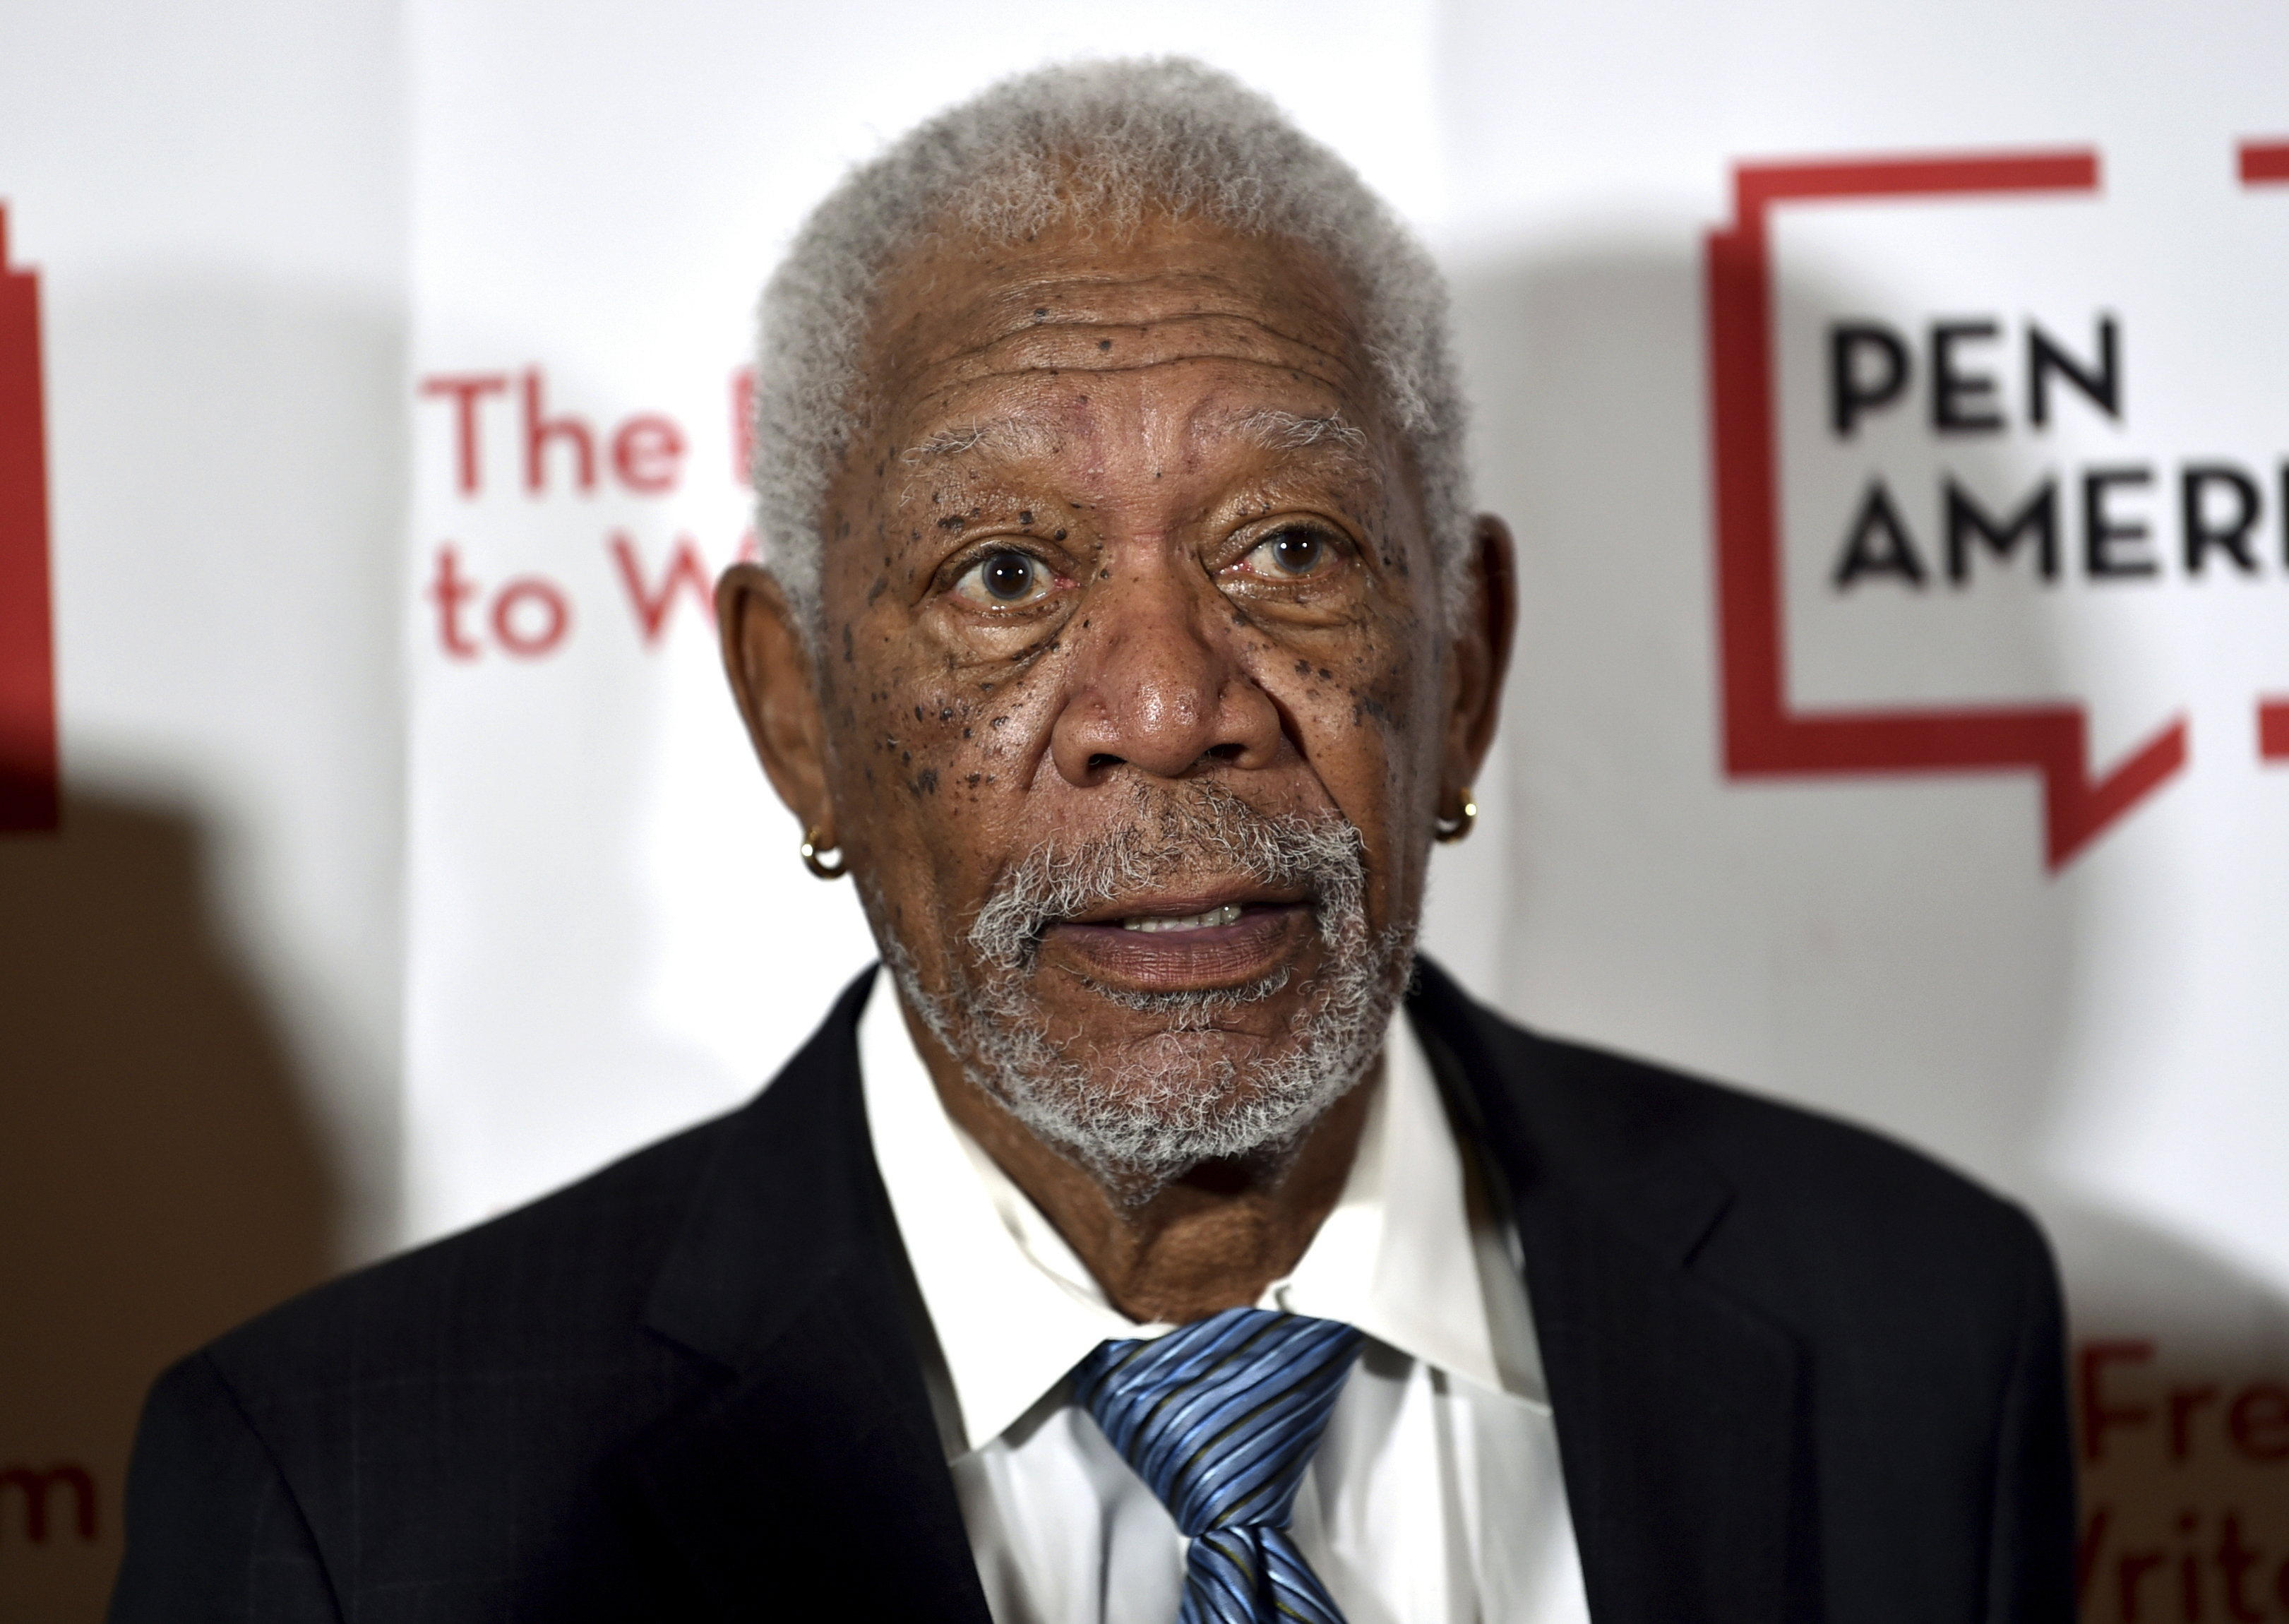 VISA Parts Ways With Morgan Freeman Amid Sexual Allegations